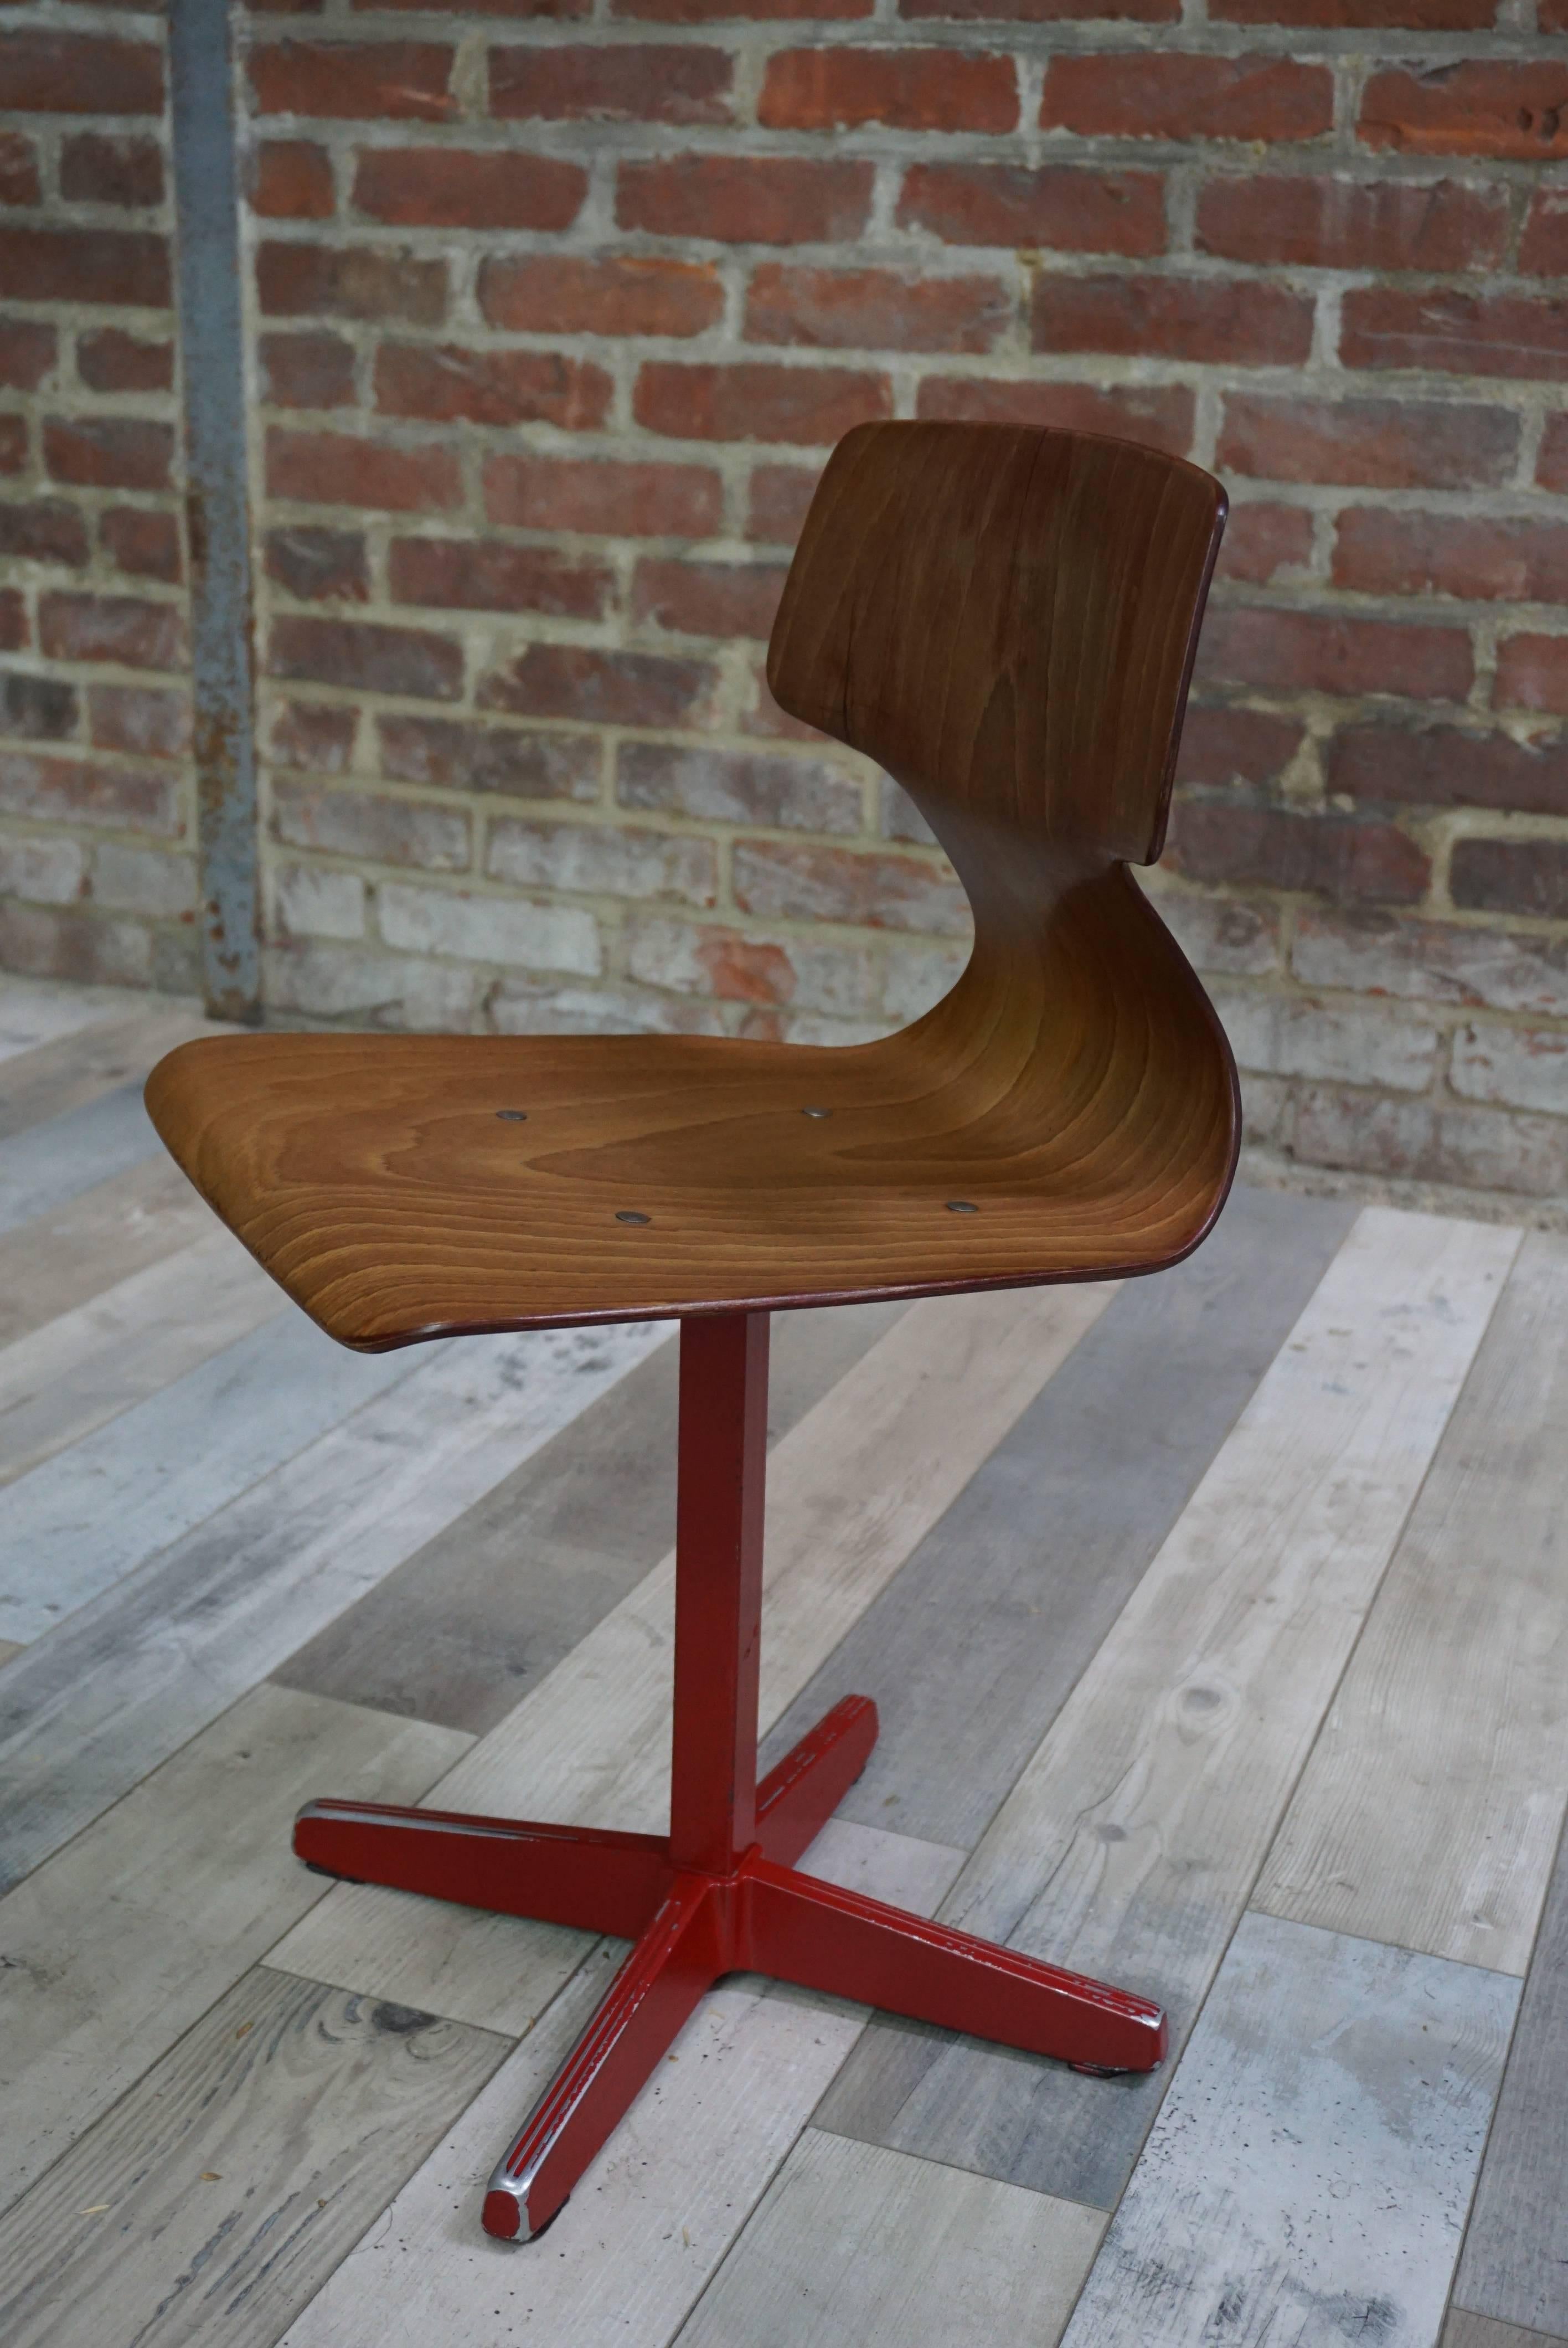 Schöner, gestempelter und nummerierter Stuhl, der in den späten 1950er und in den 1960er Jahren für öffentliche Gebäude (Universitäten, Werkstätten, Kantinen) hergestellt wurde. Die Galvanitas-Werkstatt war damals für ihre Qualität und Langlebigkeit